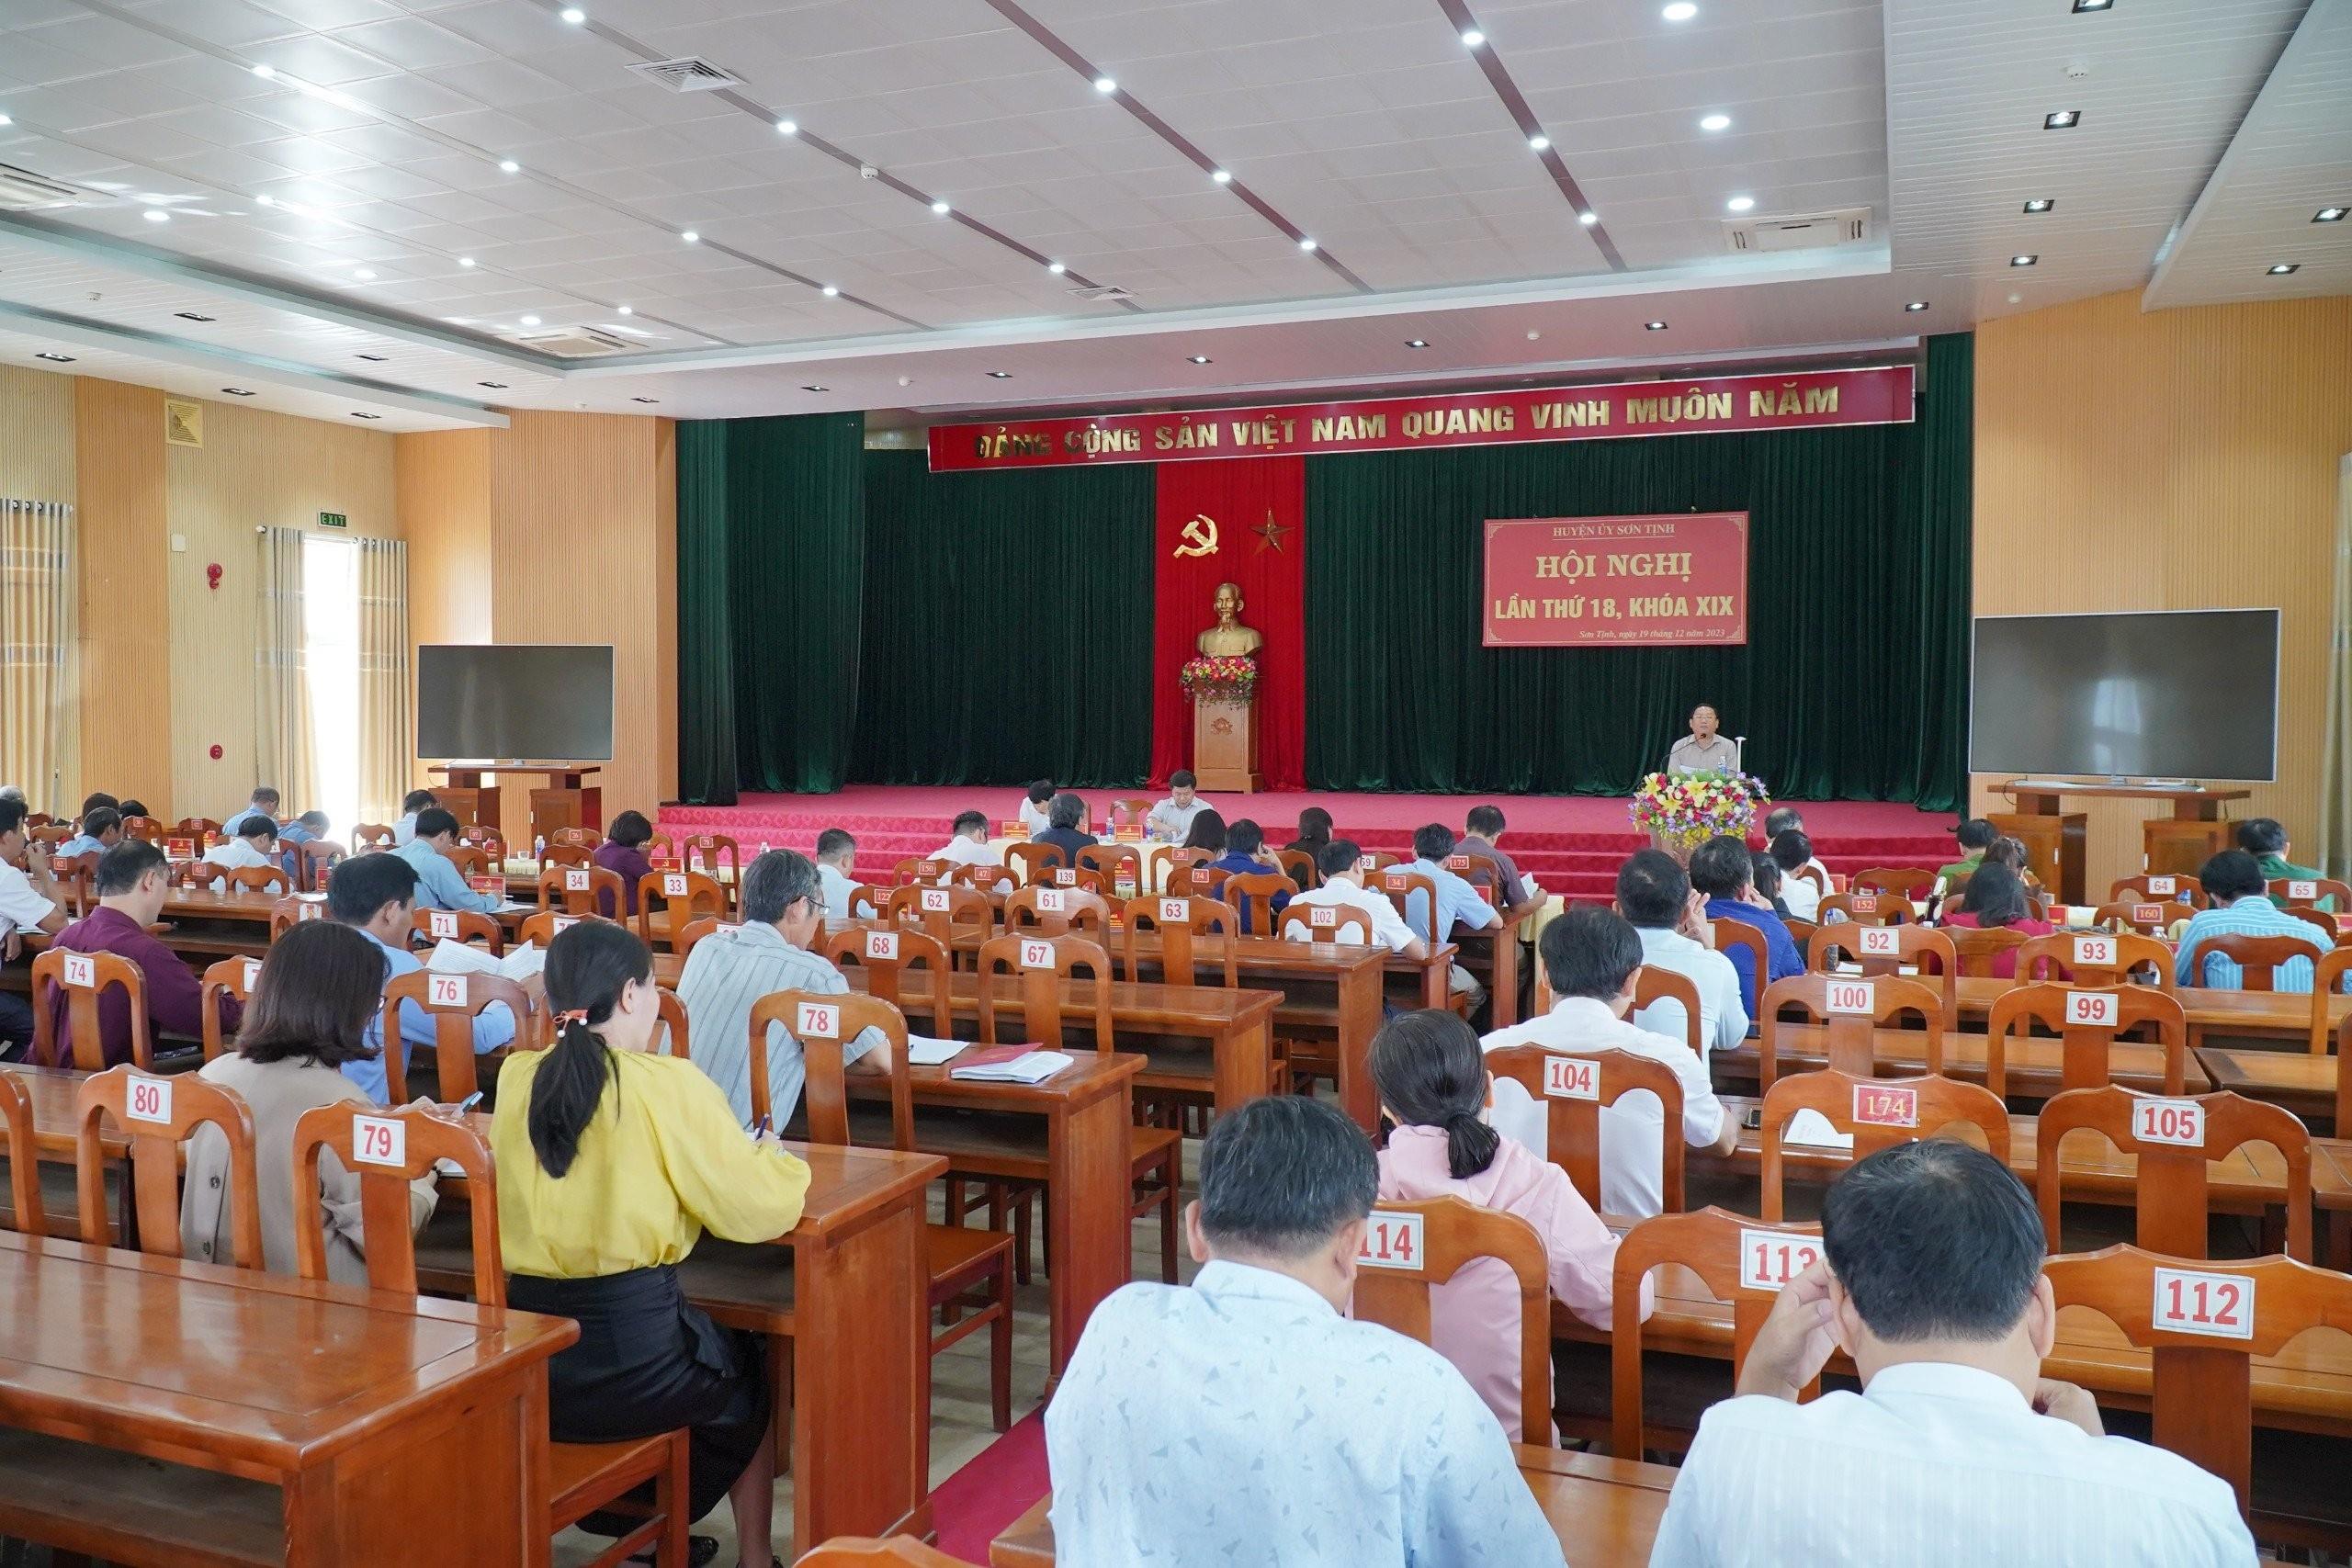 Huyện ủy Sơn Tịnh hội nghị lần thứ 18, khóa XIX